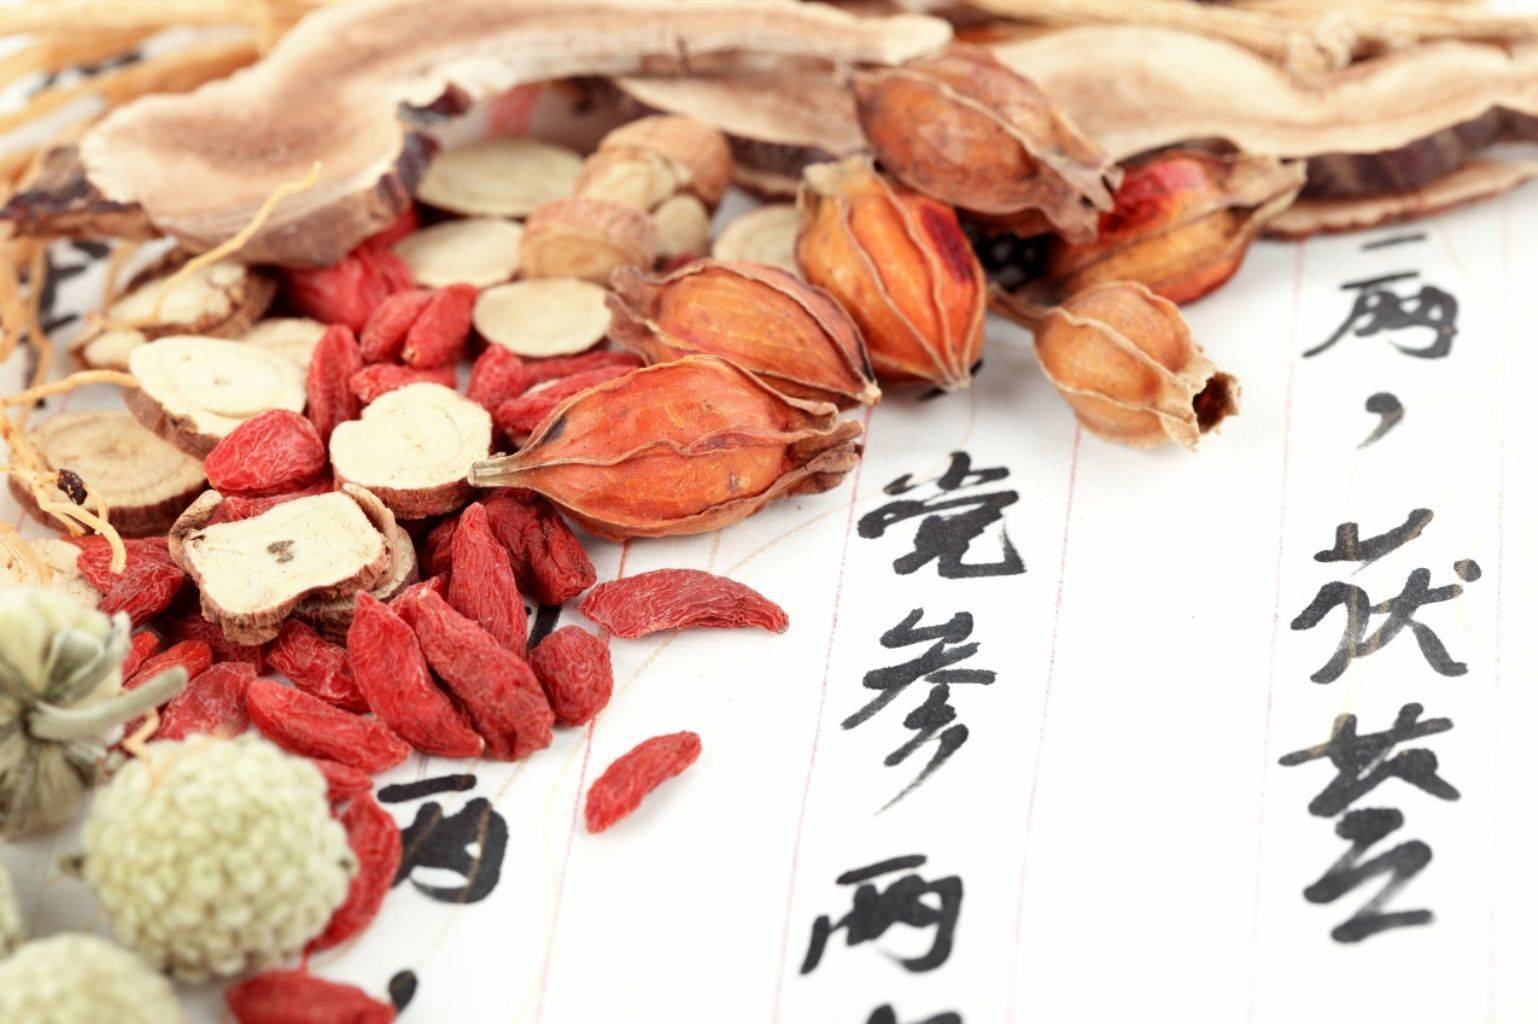 Traditionelle Chinesische Medizin in Chengdu